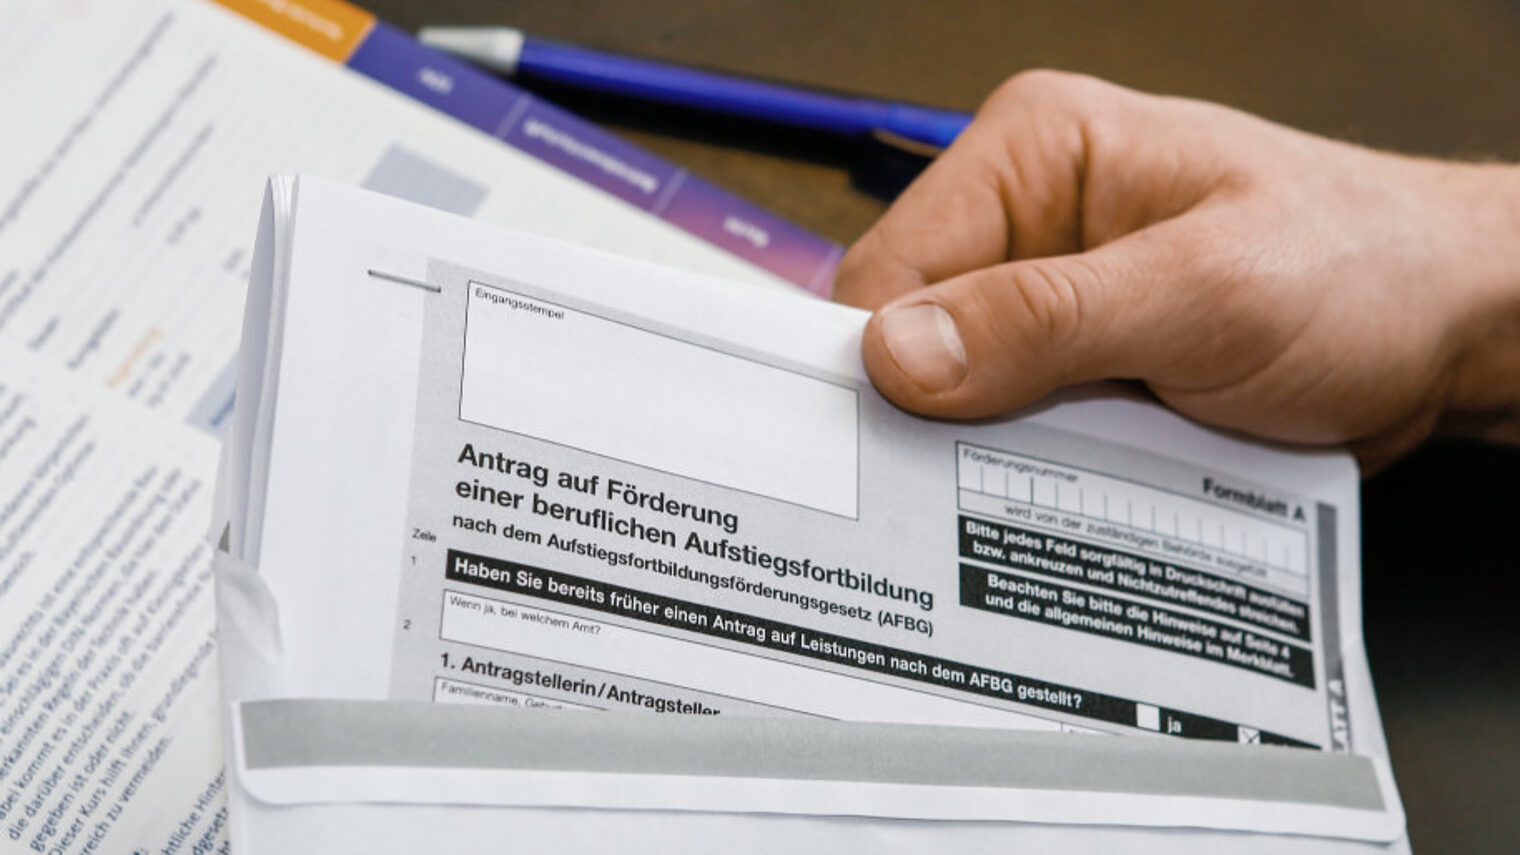 Eine Hand steckt auf einem Schreibtisch ein Antragsformular auf Ausbildungsförderung in einen Briefumschlag.